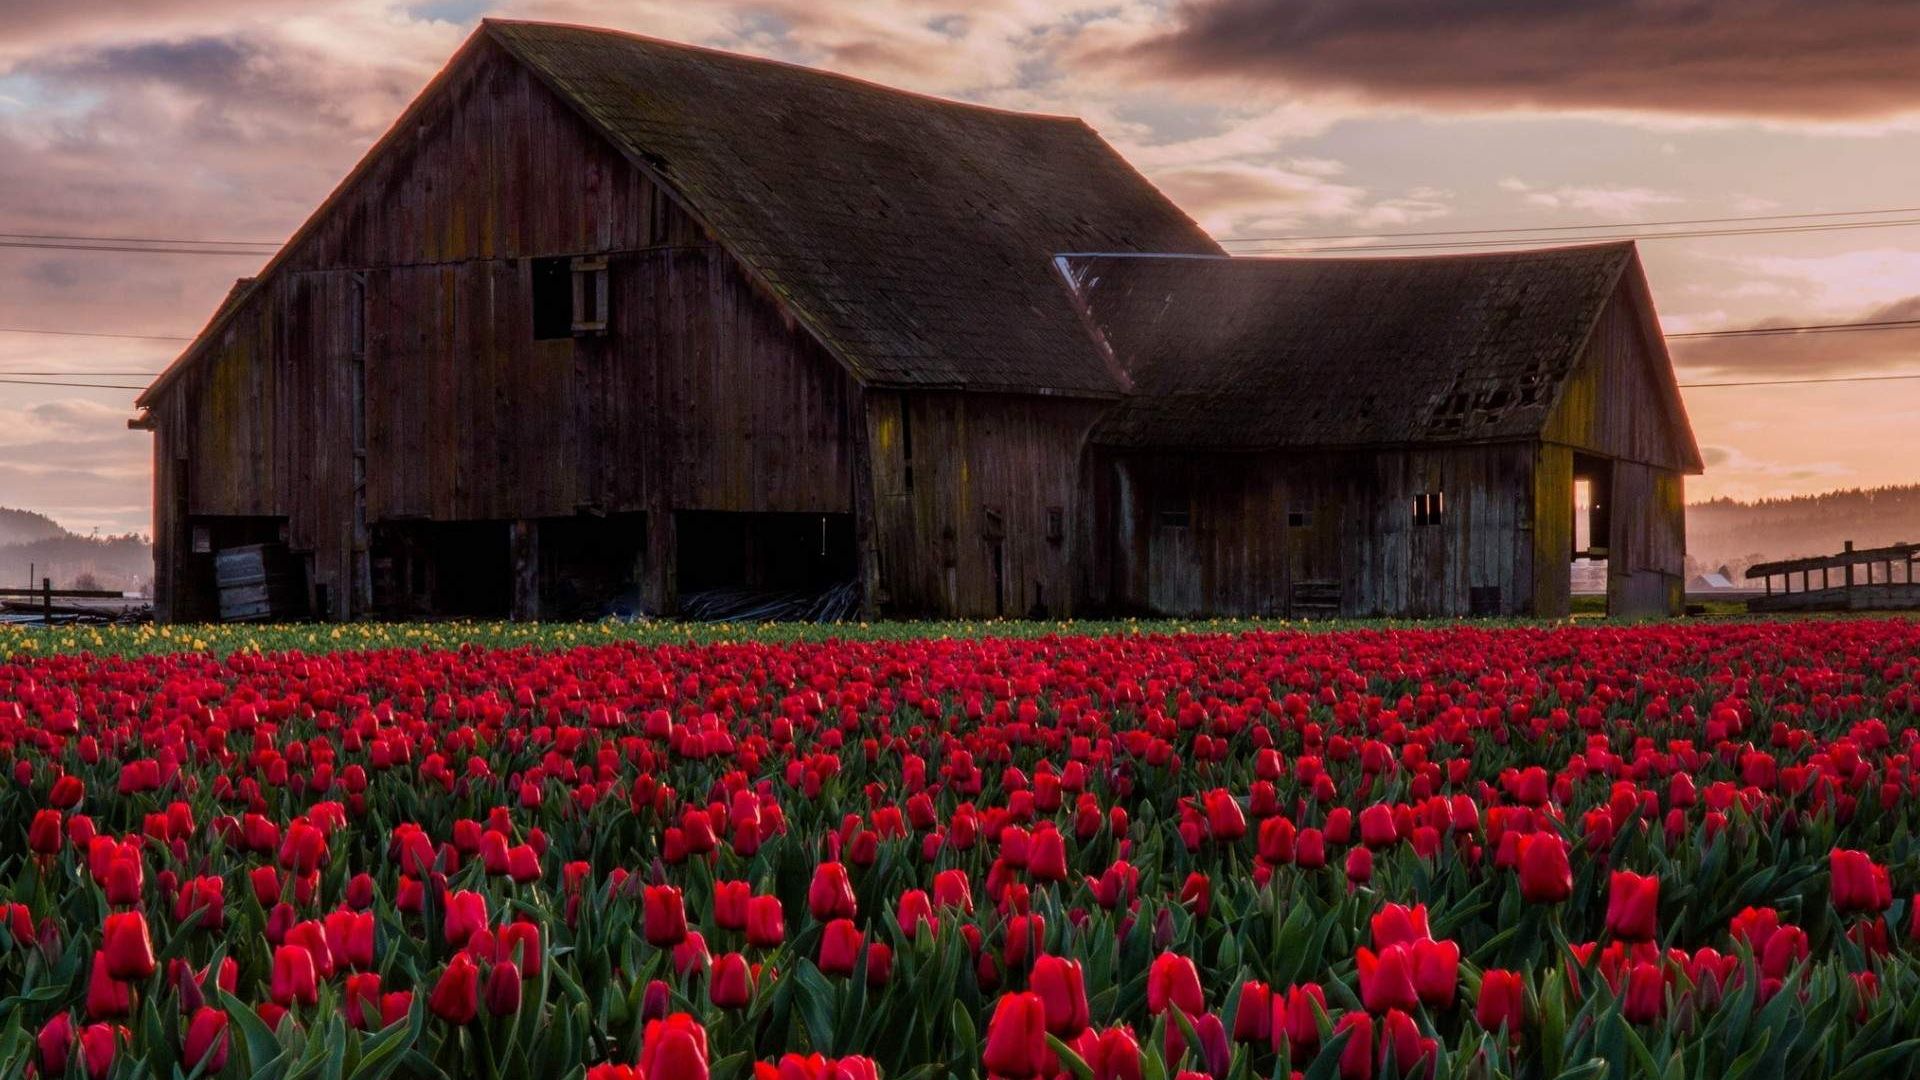 Wallpaper Old barn in tulip field landscape